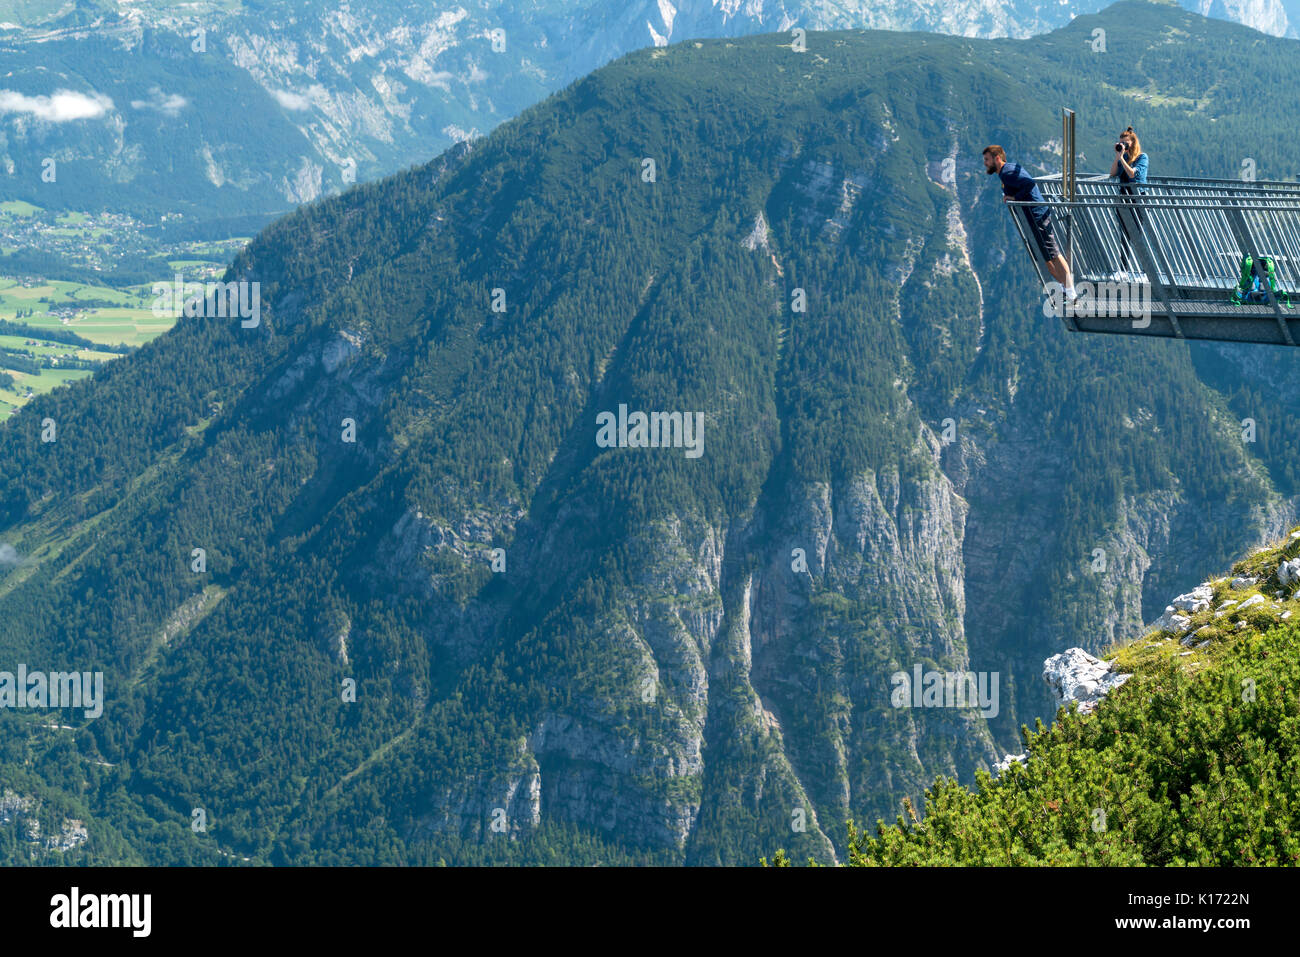 Aussichtsplattform 5fingers, Dachsteingebirge, Salzkammergut,  Österreich   |  5fingers viewing platform, Dachstein massif,  Austria Stock Photo